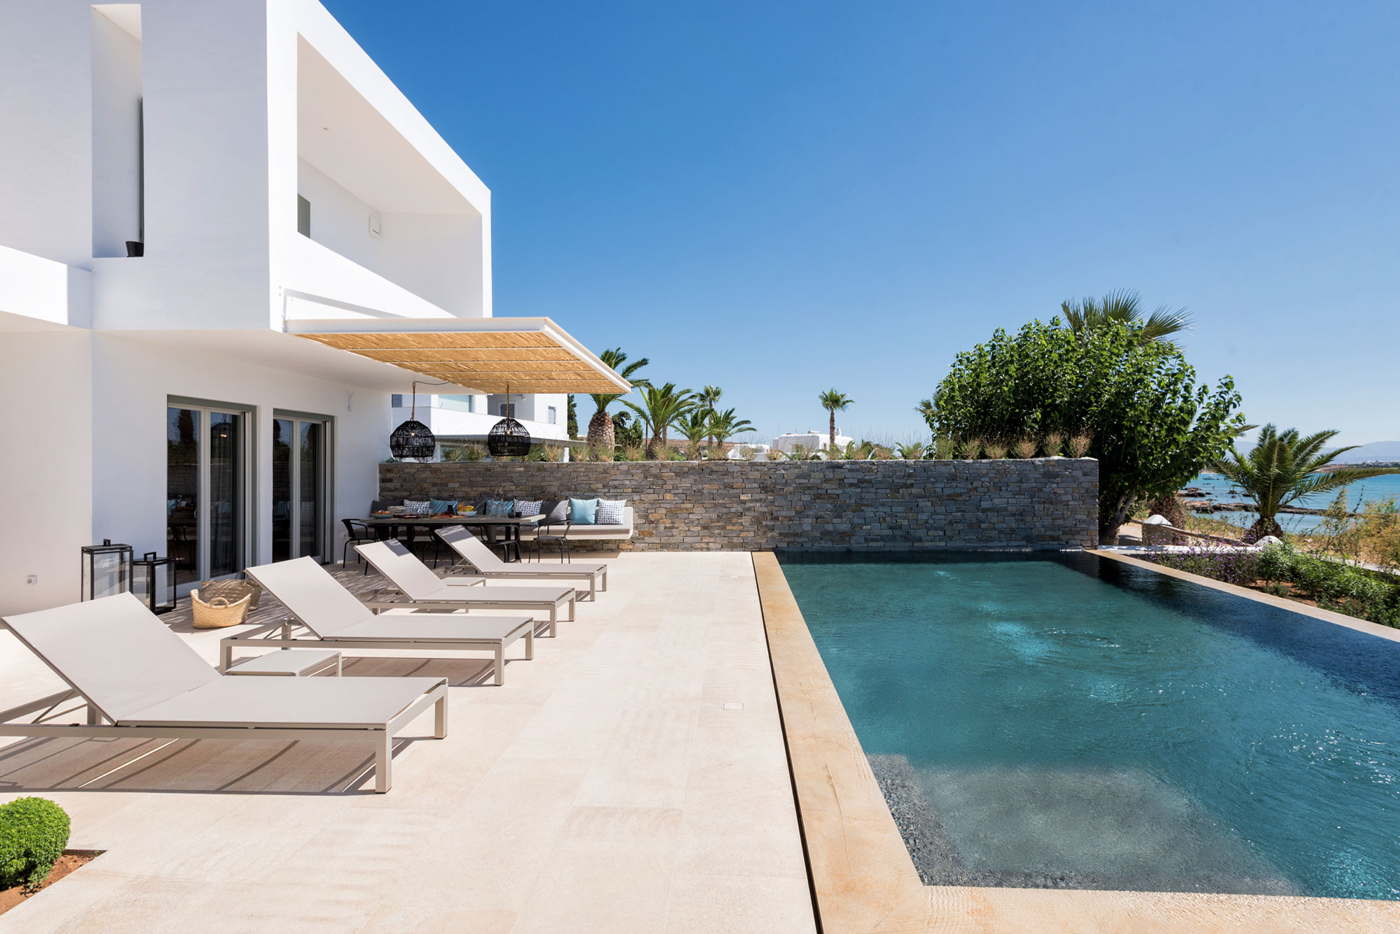 luxury villa-vacation villa with pool-by the sea-Greece-Cyclades-Paros-Dryos